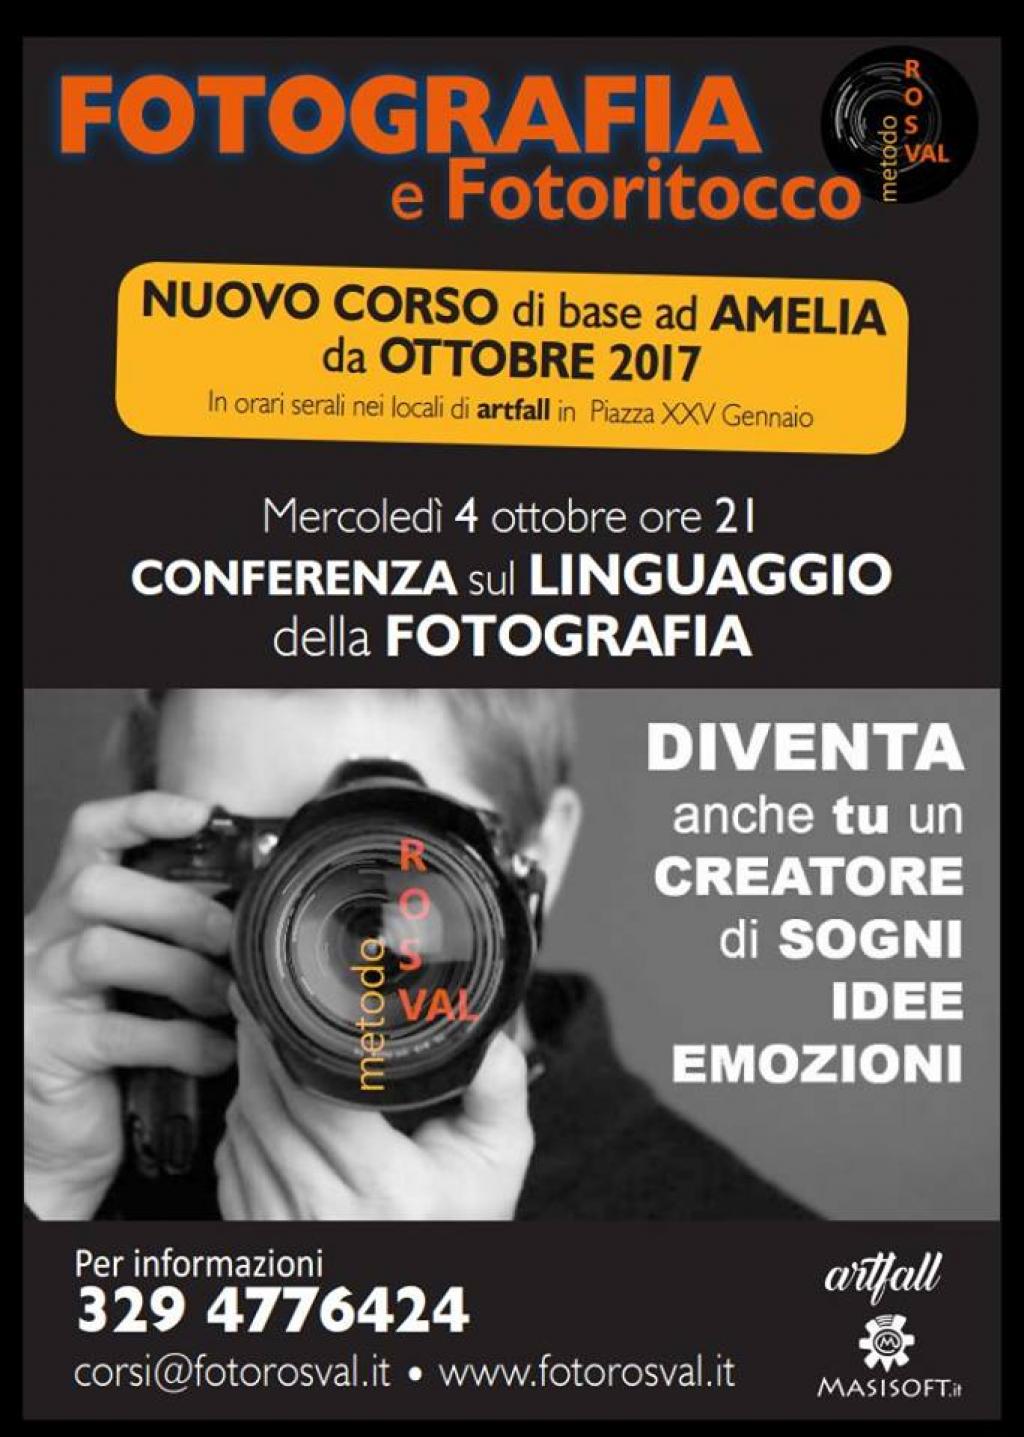 Conferenza sul linguaggio della fotografia